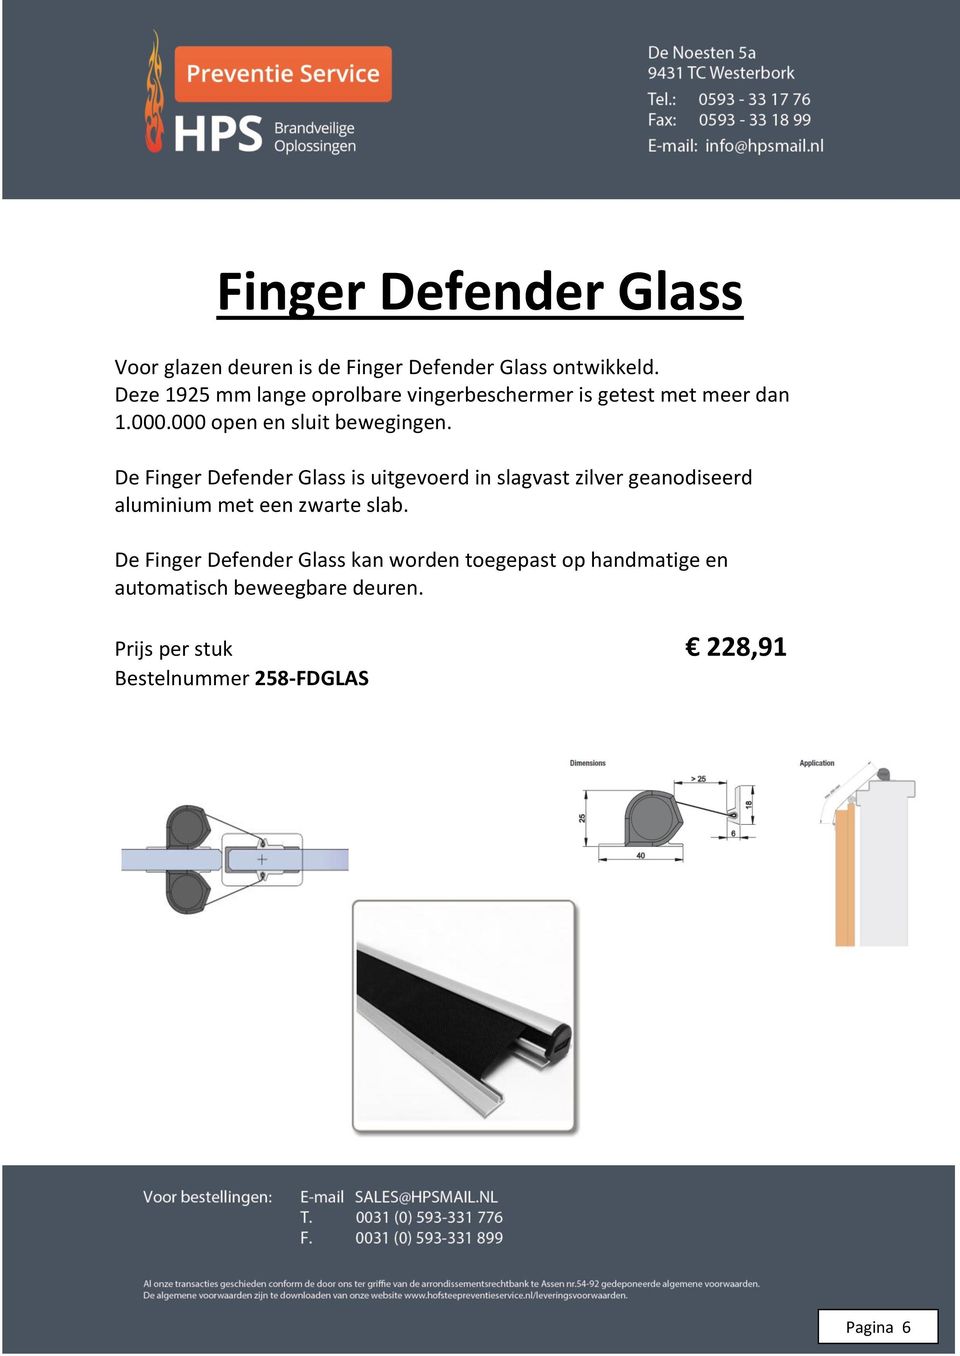 De Finger Defender Glass is uitgevoerd in slagvast zilver geanodiseerd aluminium met een zwarte slab.